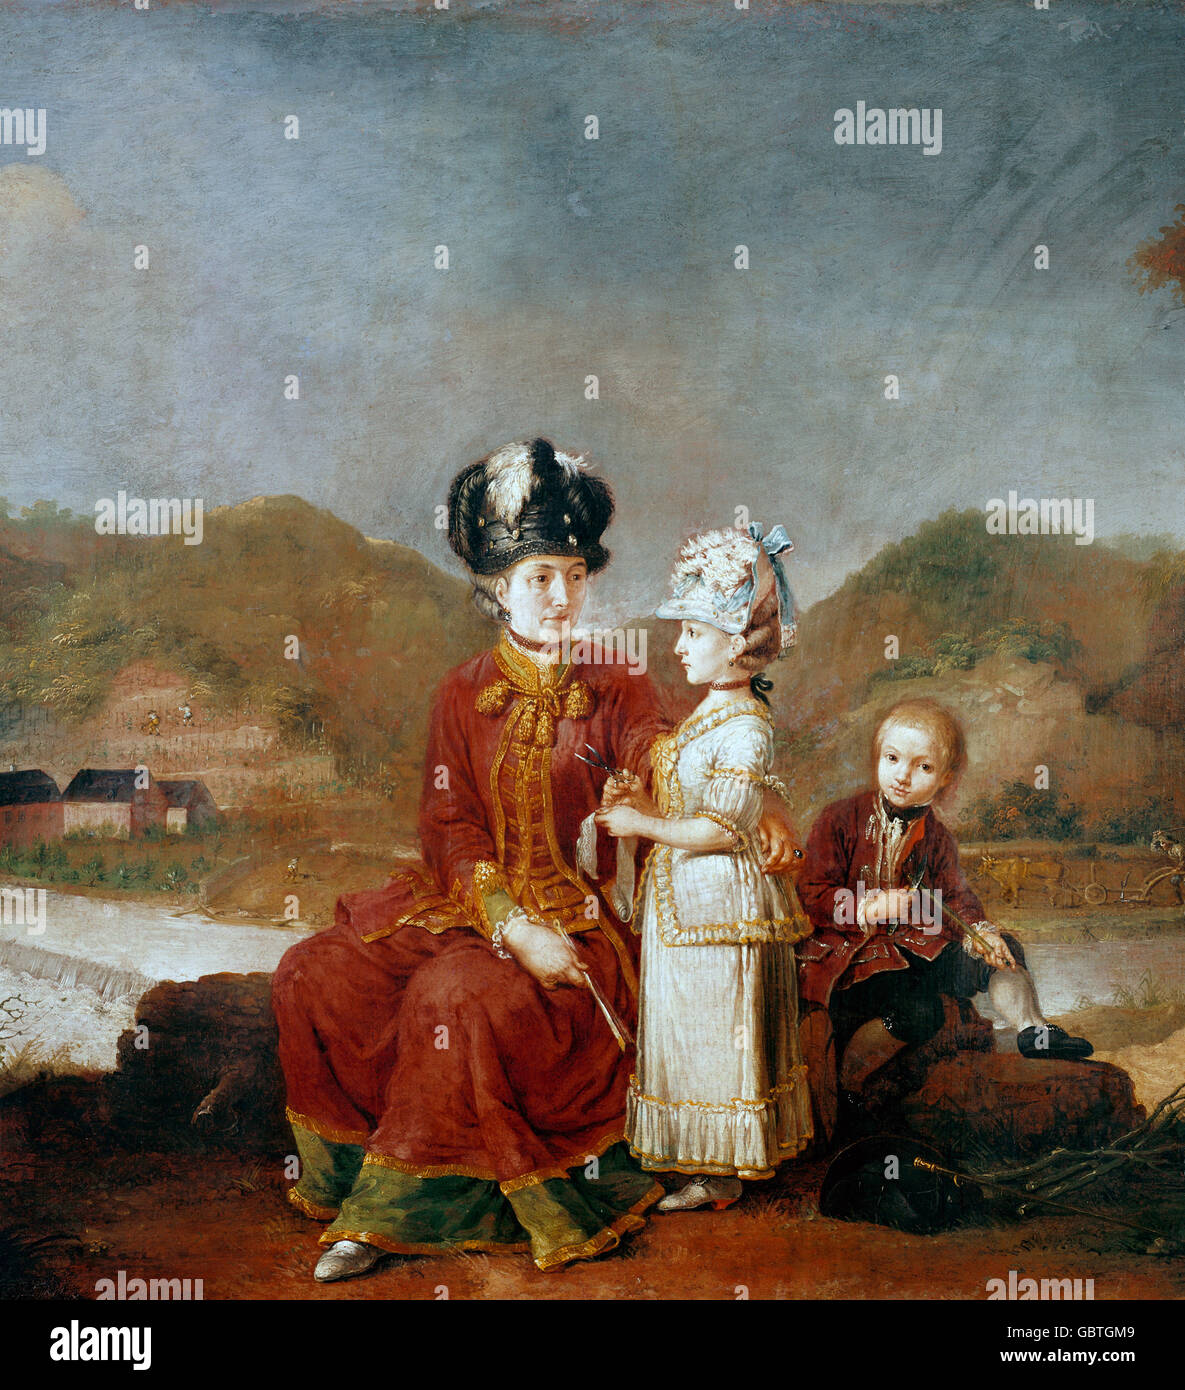 Bellas artes, Zick, Johann (1702 - 1762), pintura, "Retrato de una dama con niños", 1771, óleo sobre lienzo, 97 x 83 cm. Foto de stock